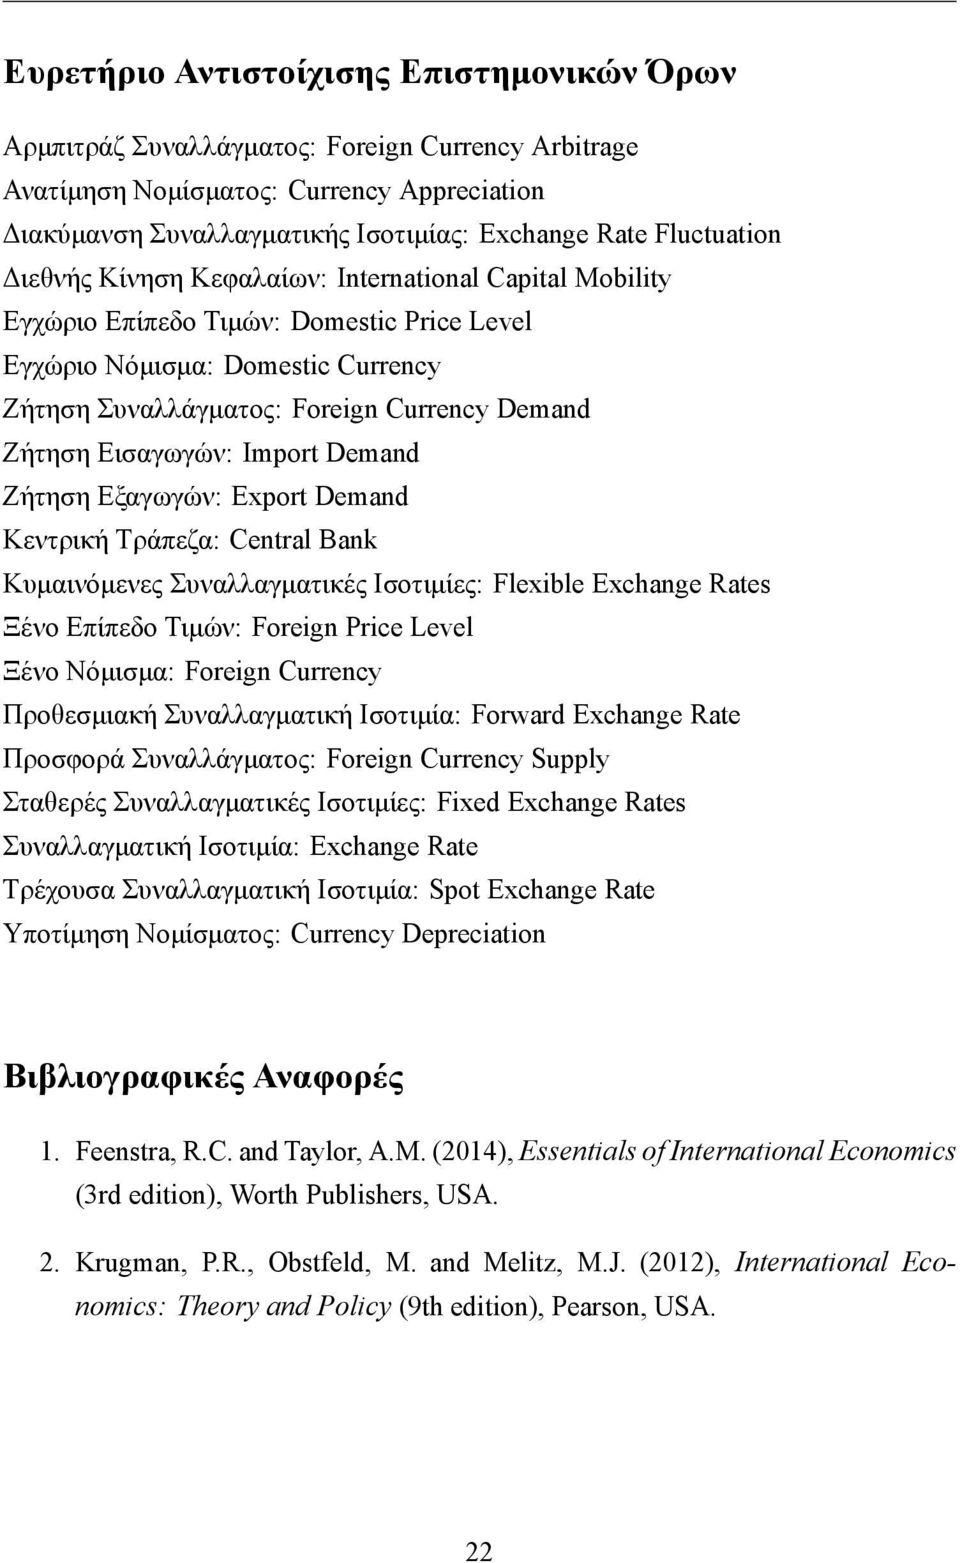 Ζήτηση Εισαγωγών: Import Demand Ζήτηση Εξαγωγών: Export Demand Κεντρική Τράπεζα: Central Bank Κυμαινόμενες Συναλλαγματικές Ισοτιμίες: Flexible Exchange Rates Ξένο Επίπεδο Τιμών: Foreign Price Level